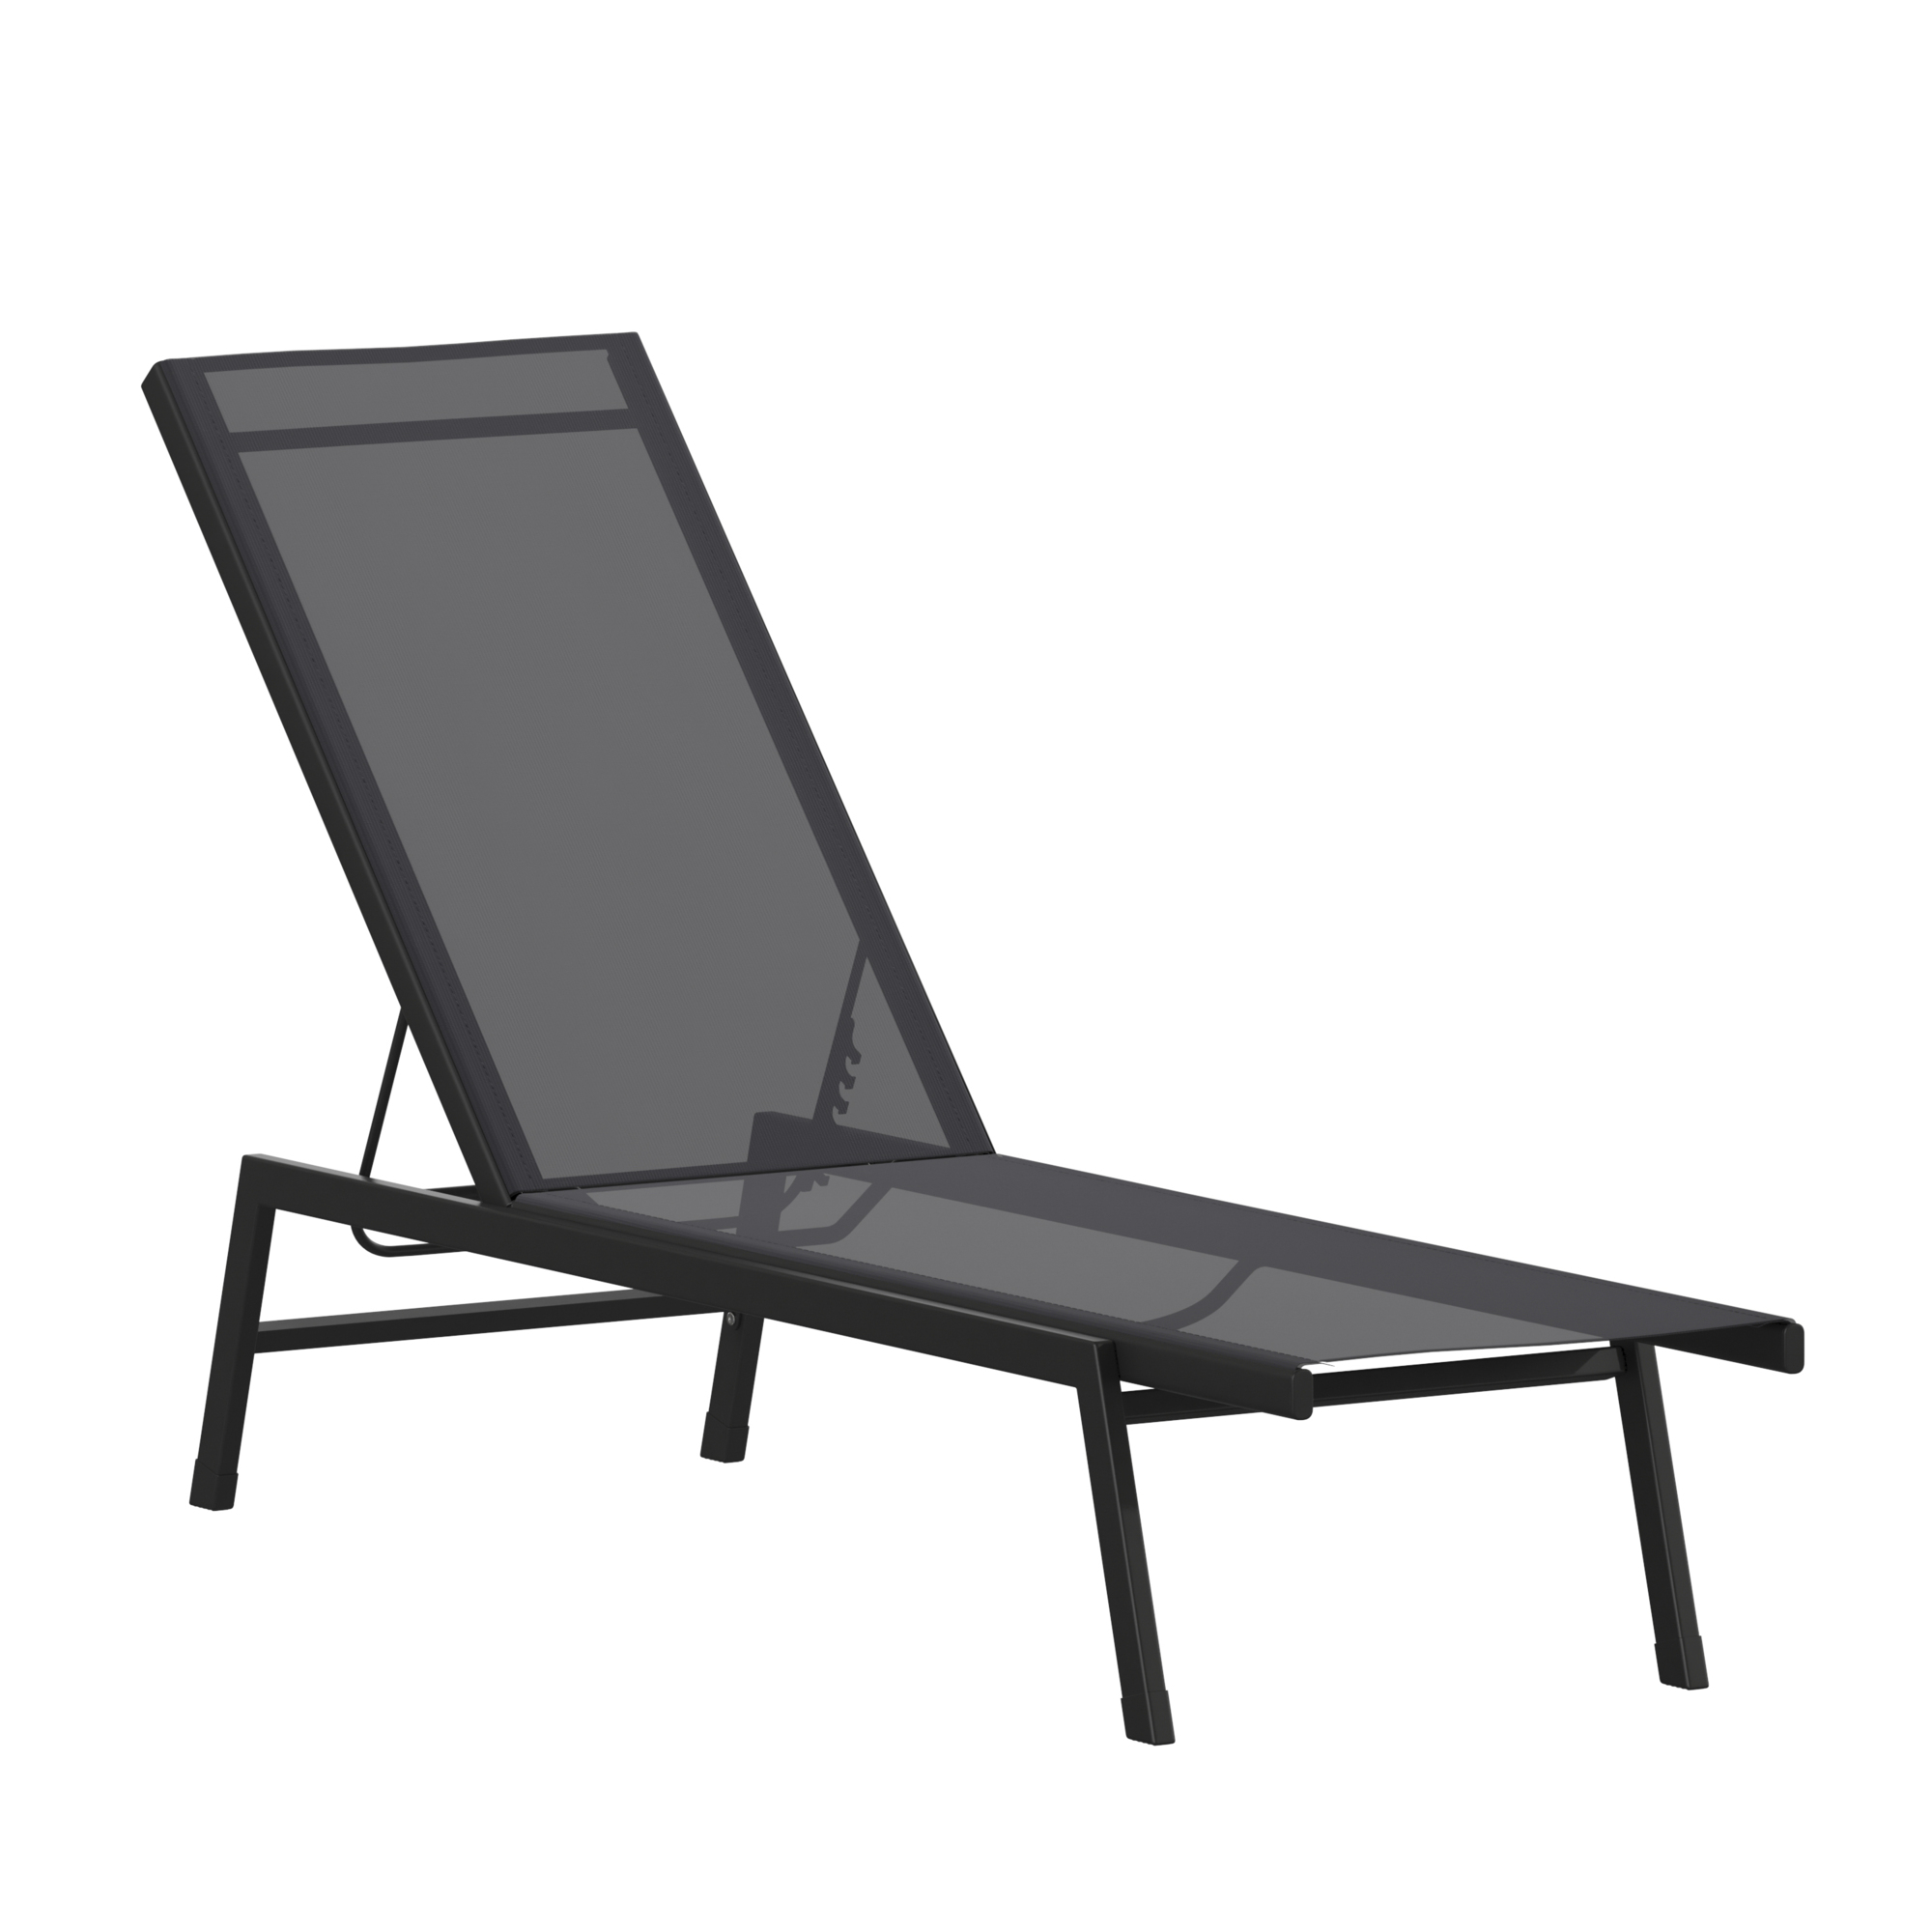 Flash Furniture, Black/Black Adjustable Chaise Lounge, Primary Color Black, Material Steel, Width 23.25 in, Model JJLC326BKBK